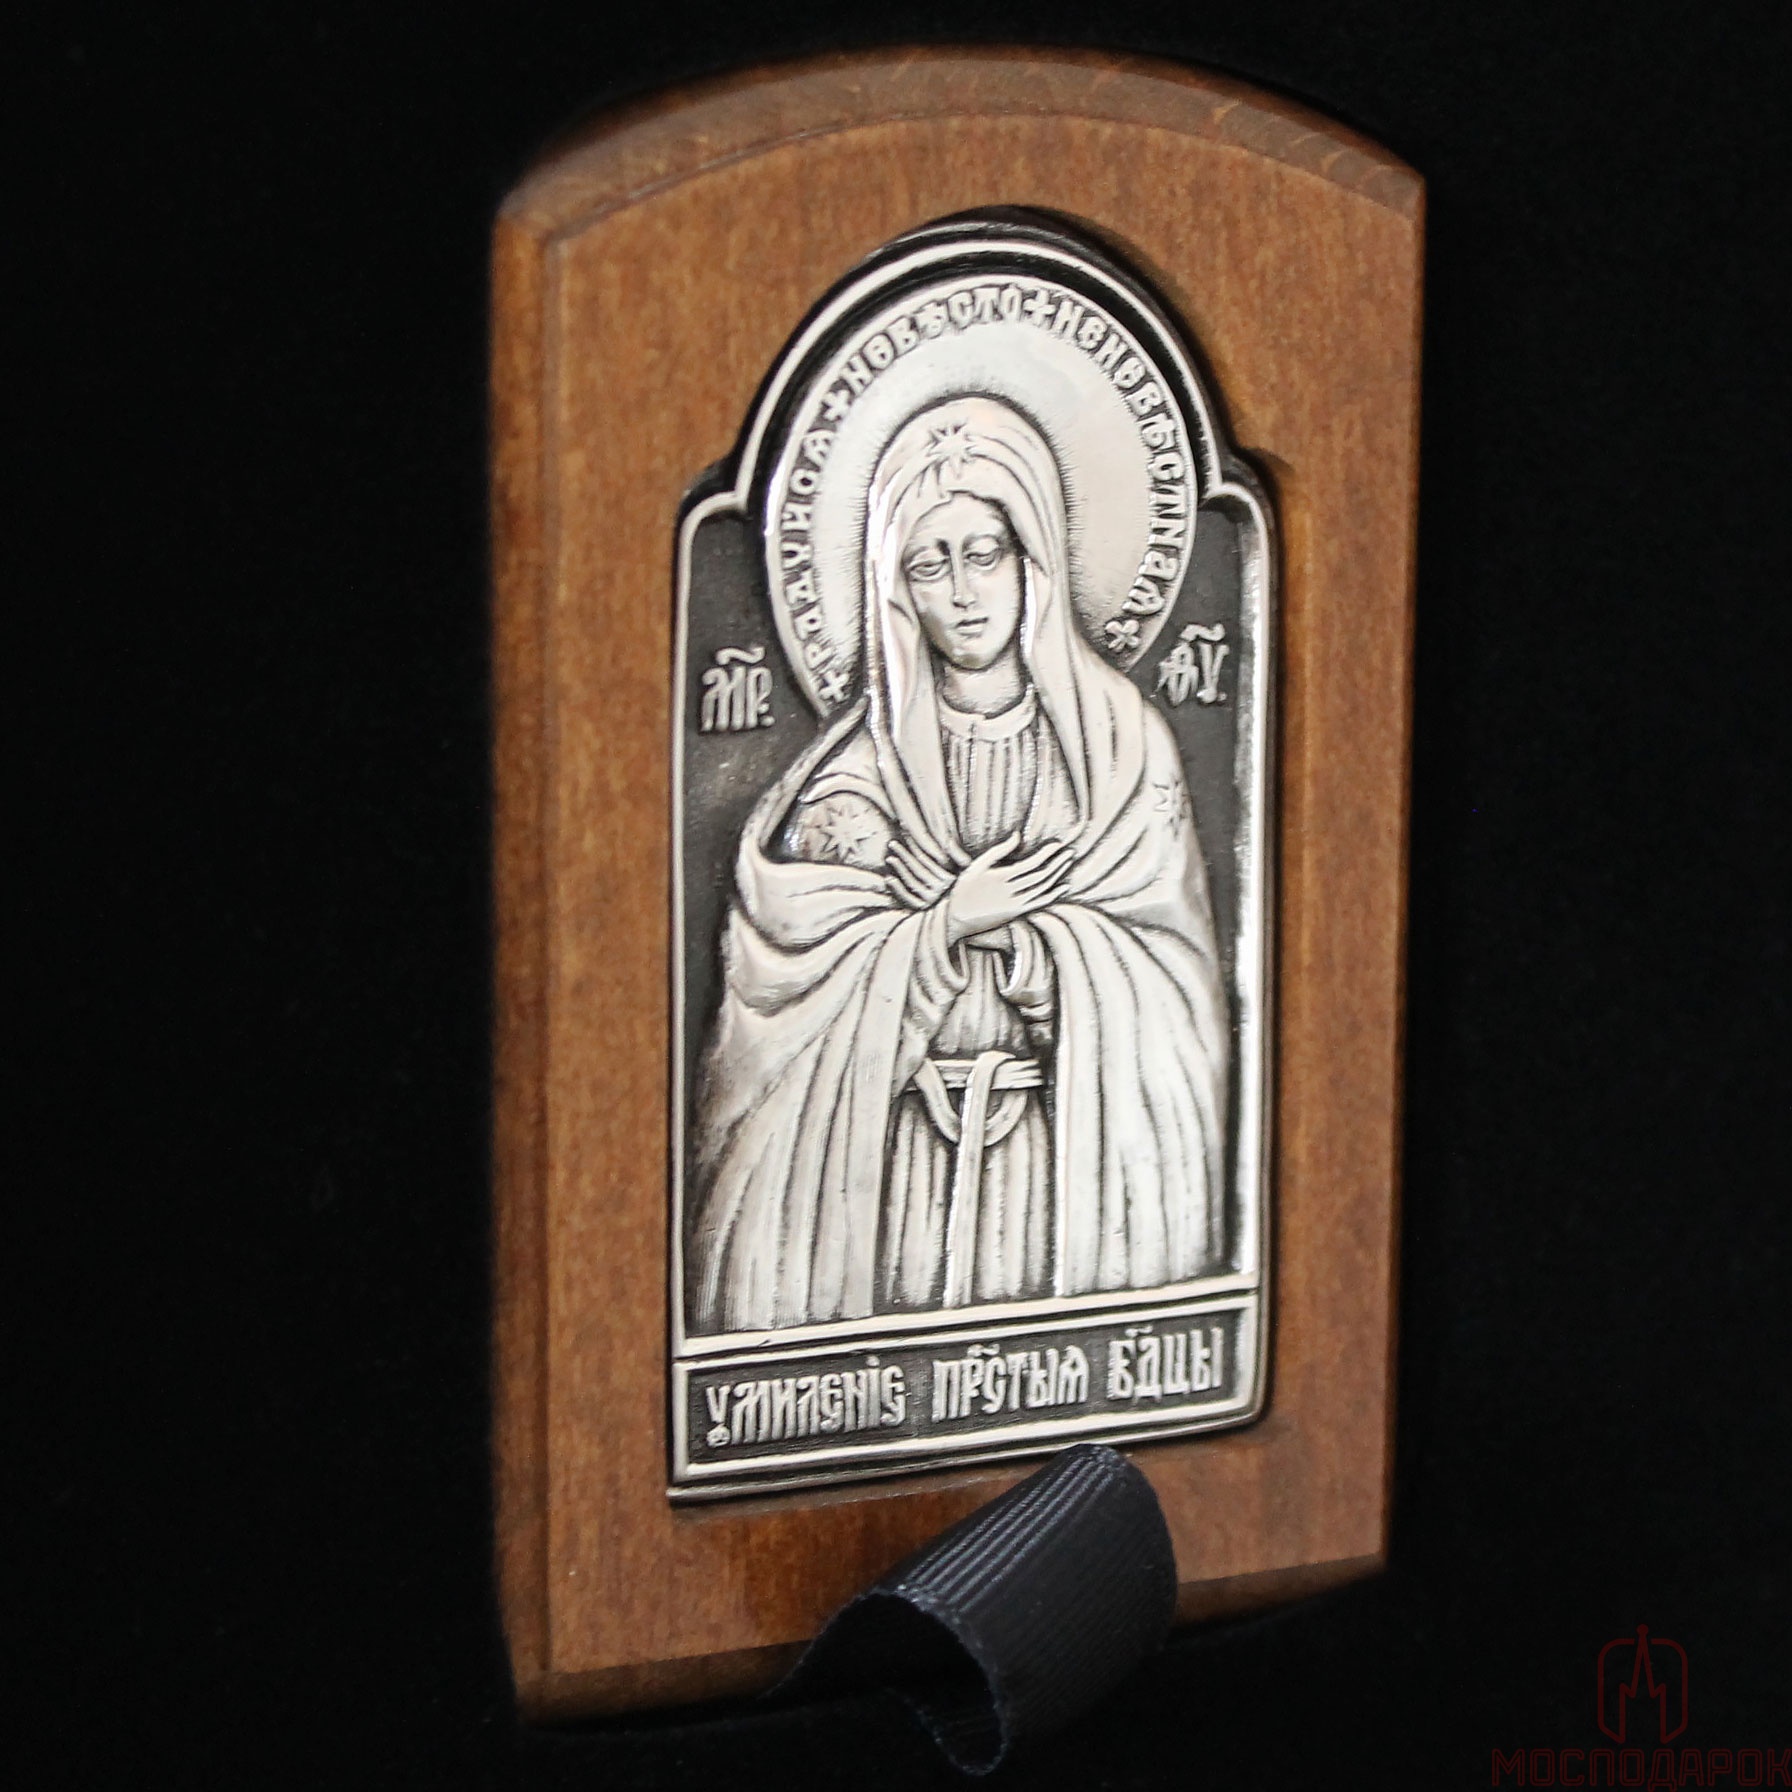 Подарочное издание "Молитвы Матери" с иконой - артикул: 205322 | Мосподарок 